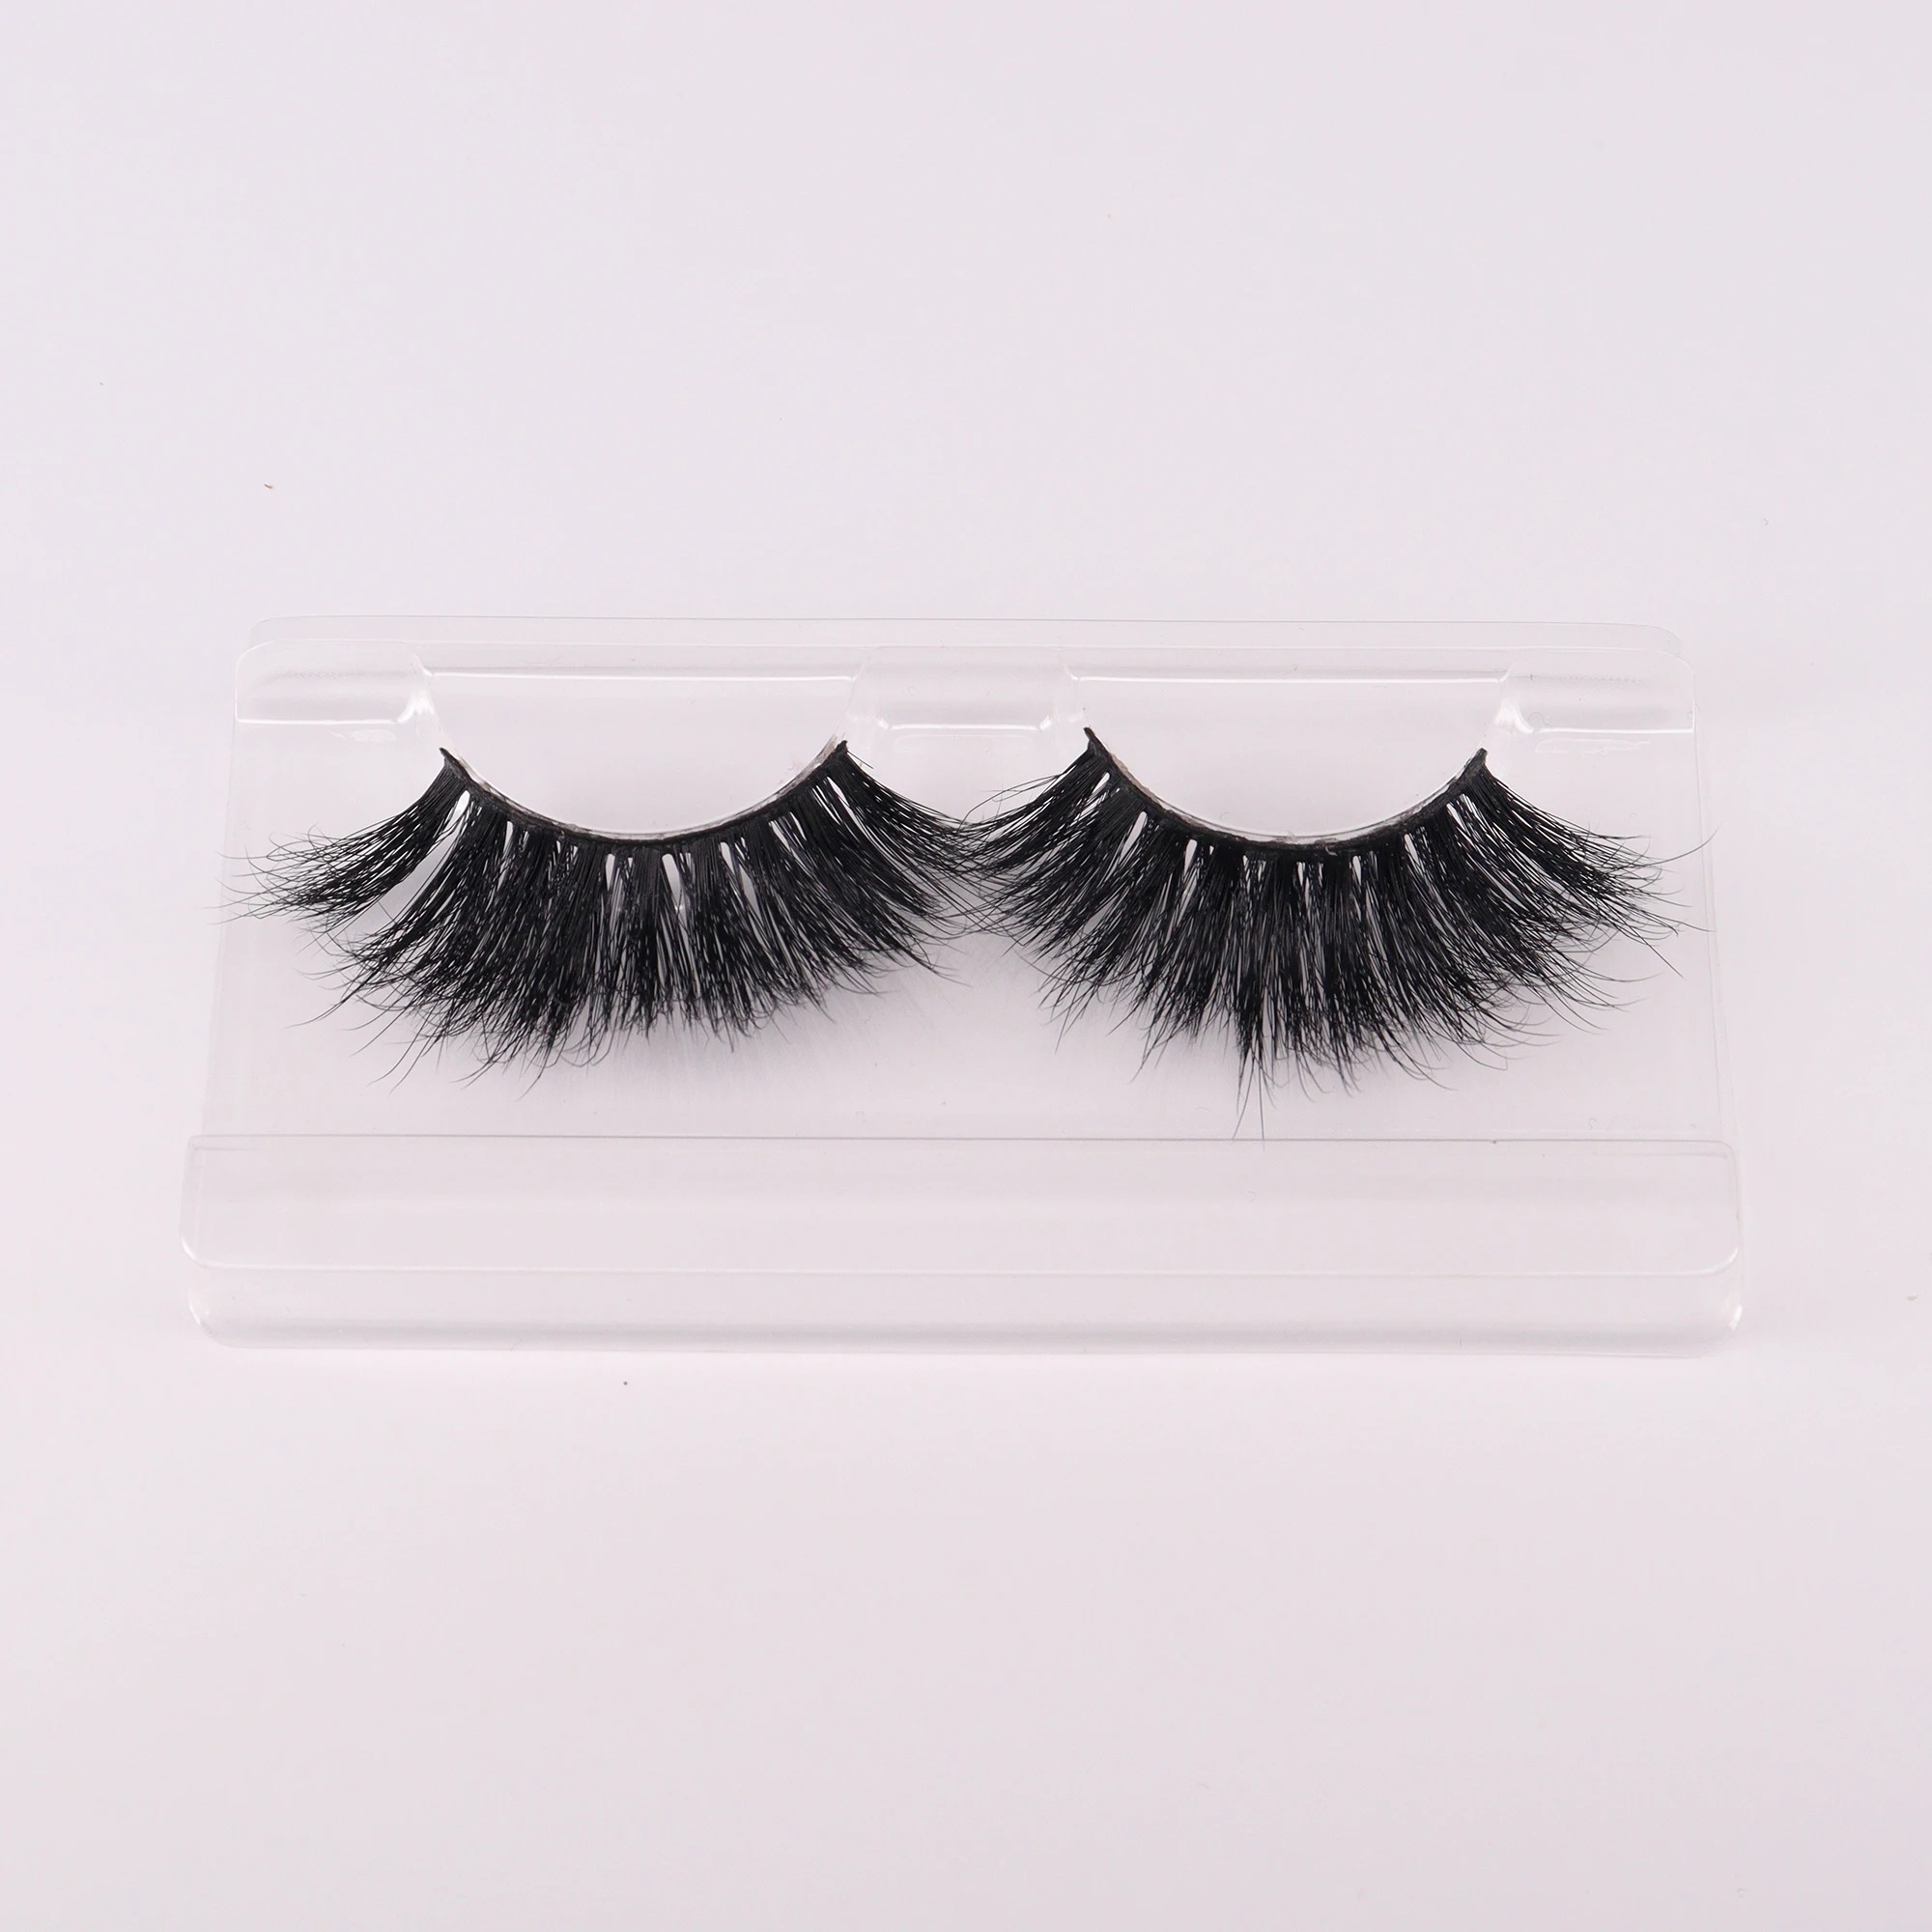 

Qingdao 3D Wholesale Faux Mink Eyelashes Nature Black Fluffy Cluster False Eyelashes Private Label Eyelashes Box Packing Custom, Natural black